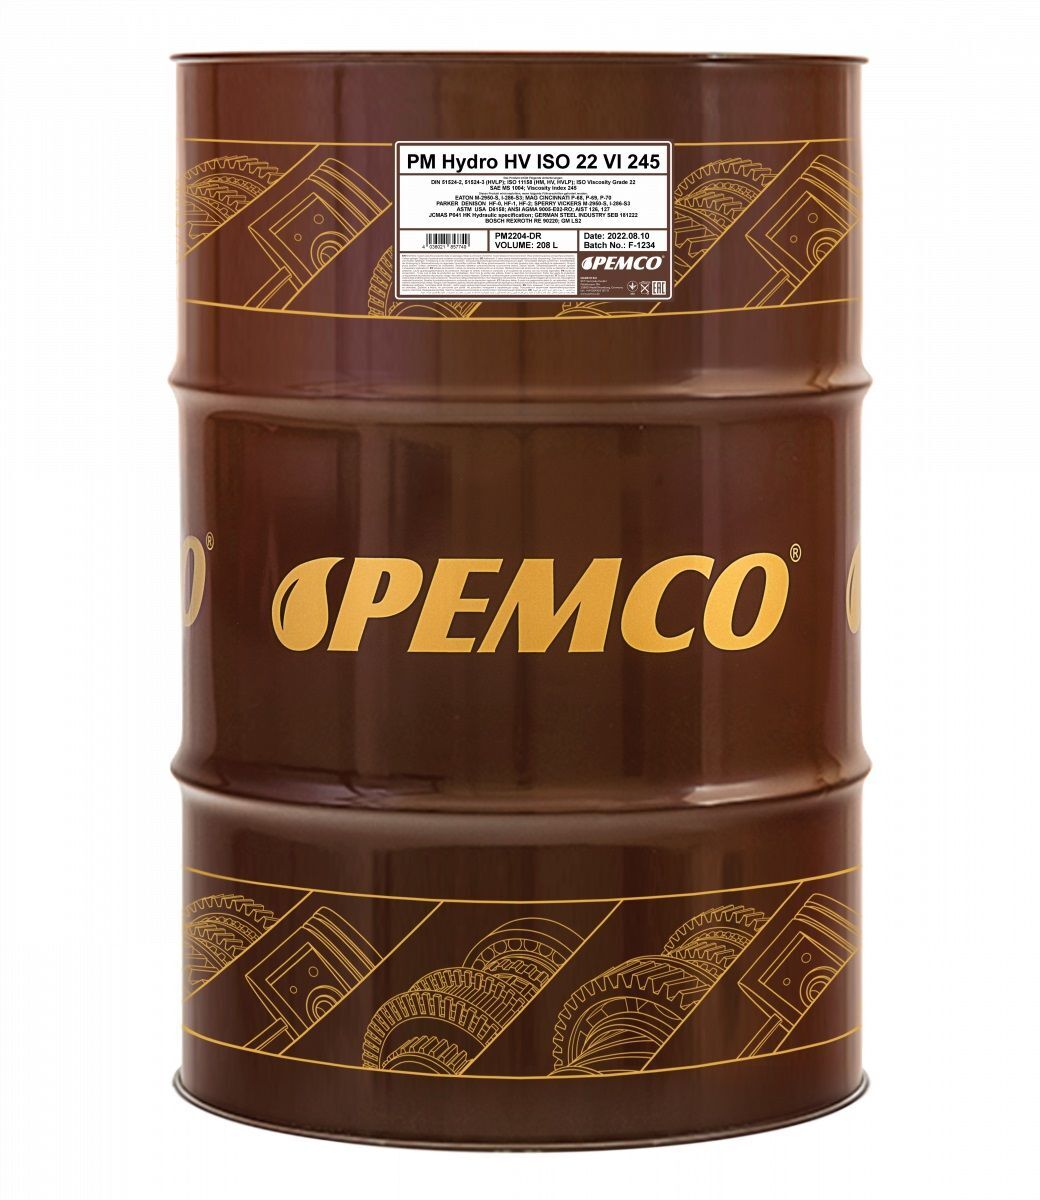 Гидравлическое масло PEMCO Hydro HV ISO 22 VI 245 синтетическое, 208л (PM2204-DR)